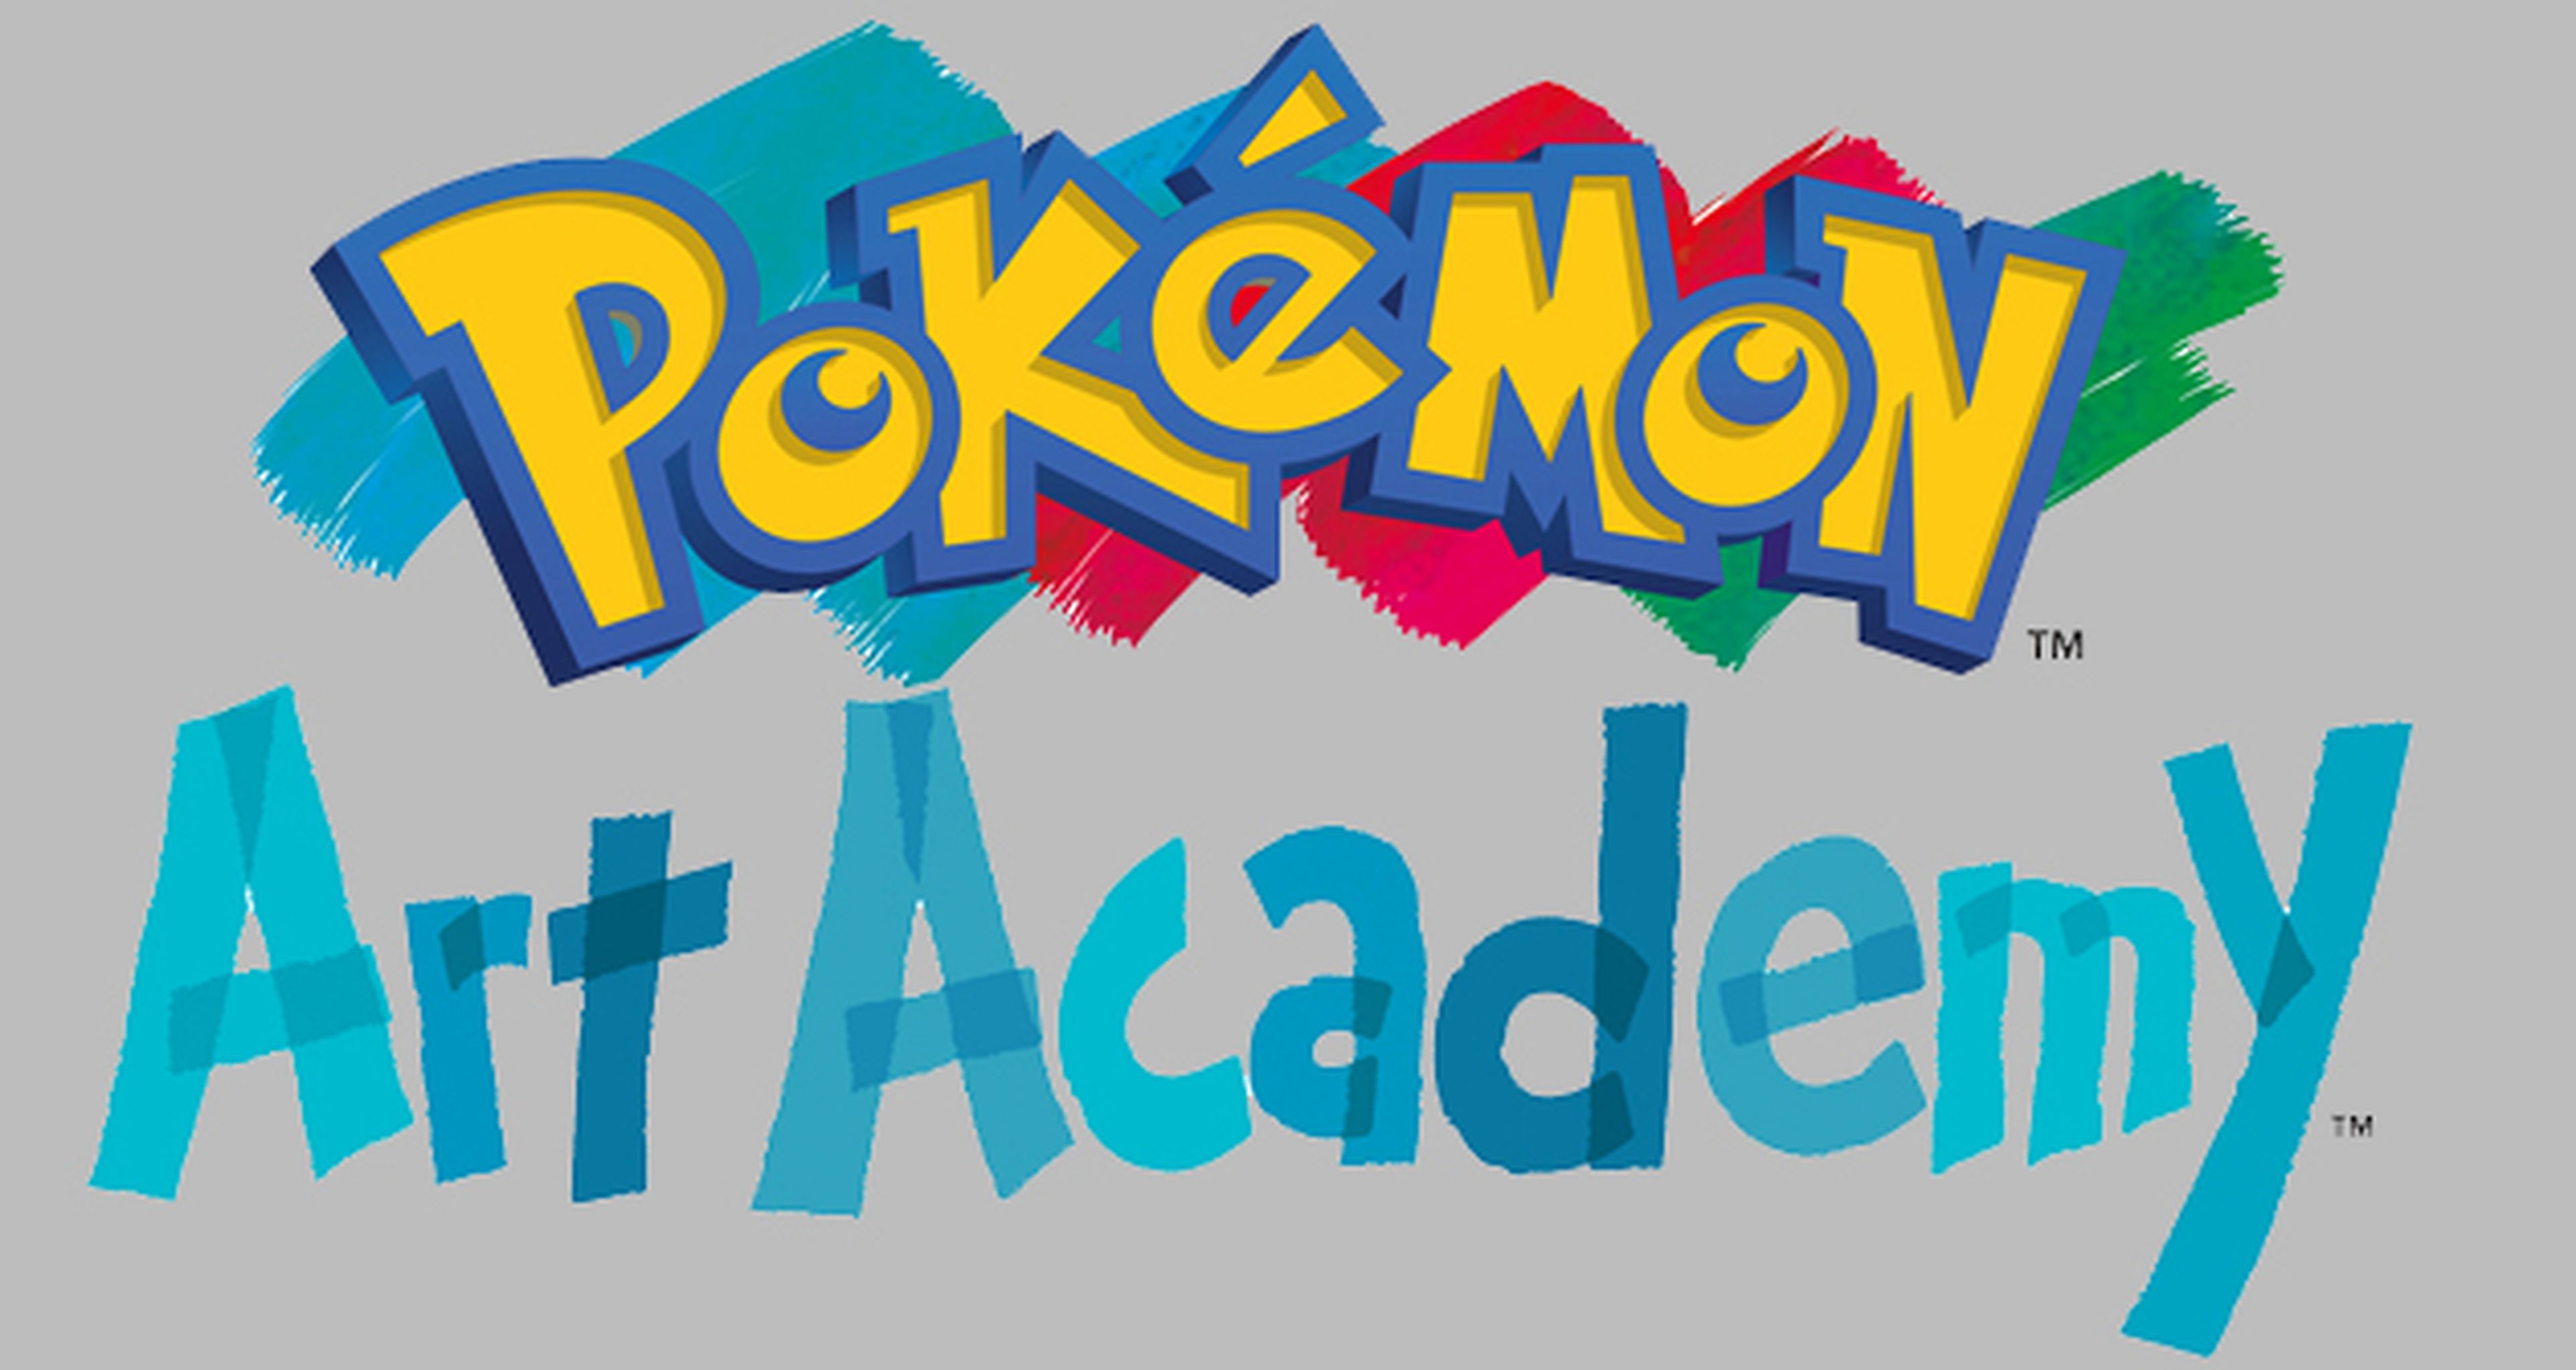 Pokémon Art Academy llegará a Europa en verano